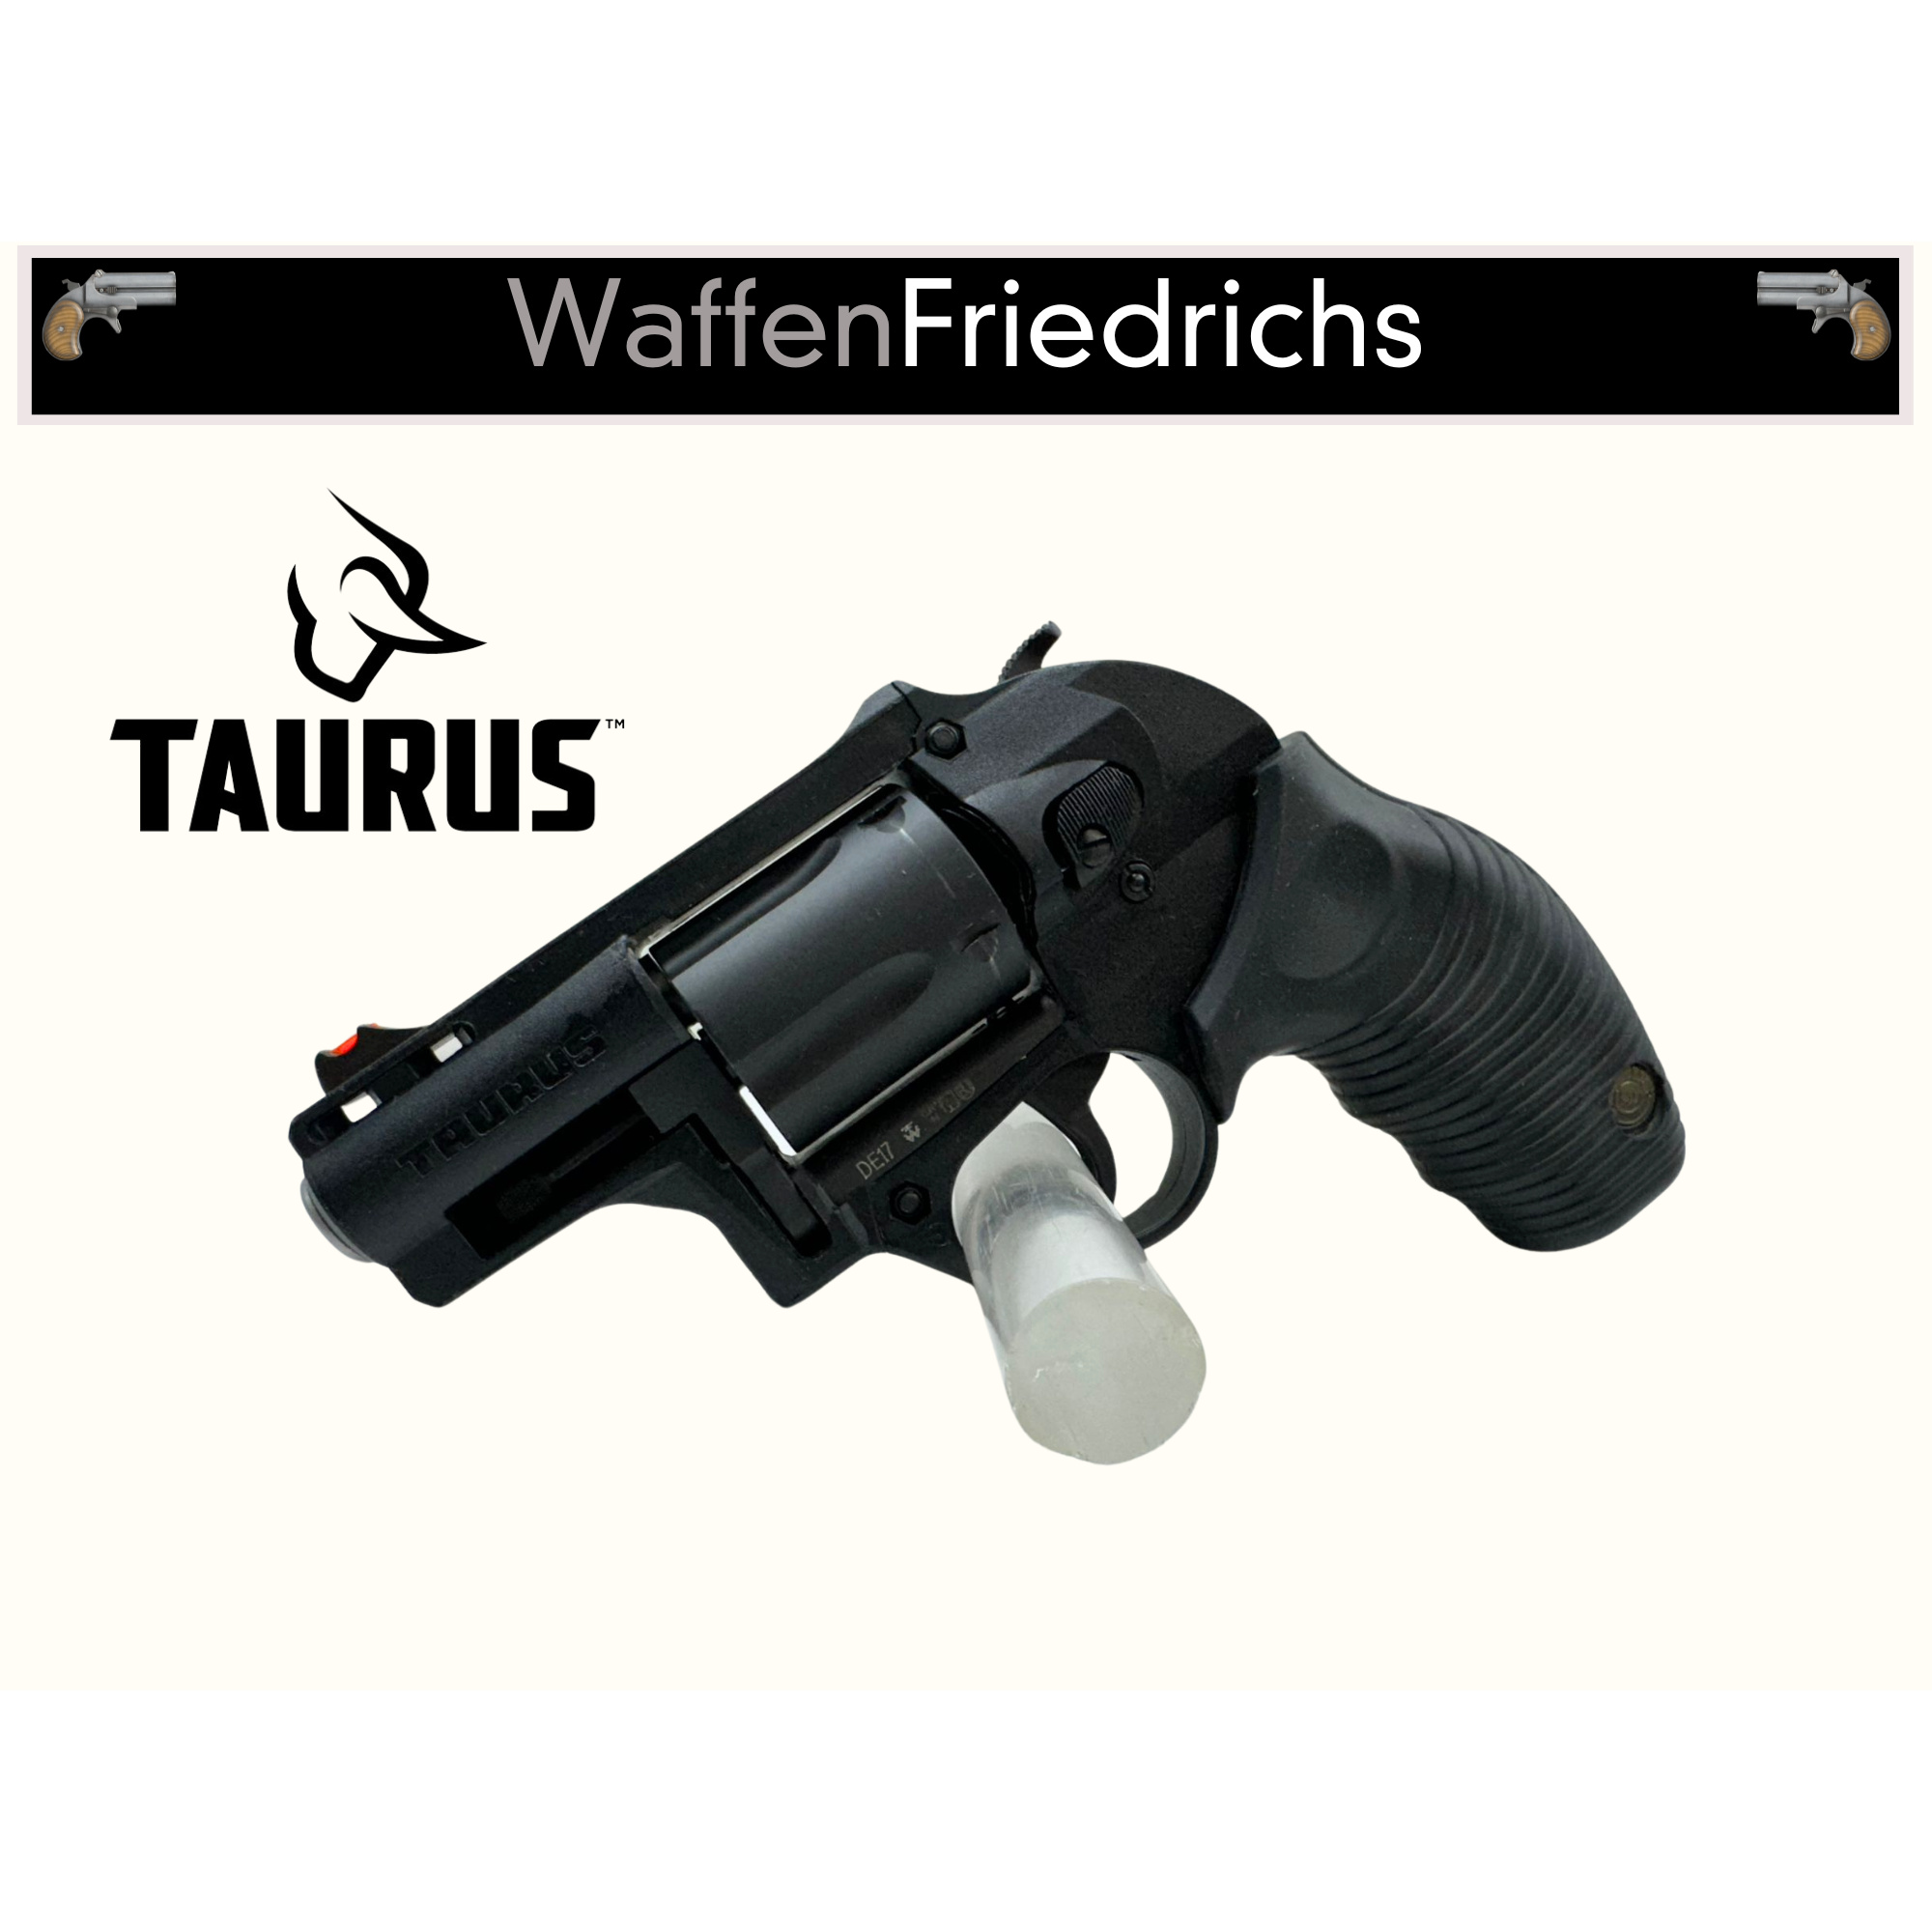 Taurus 605 Protector Polymer - WaffenFriedrichs